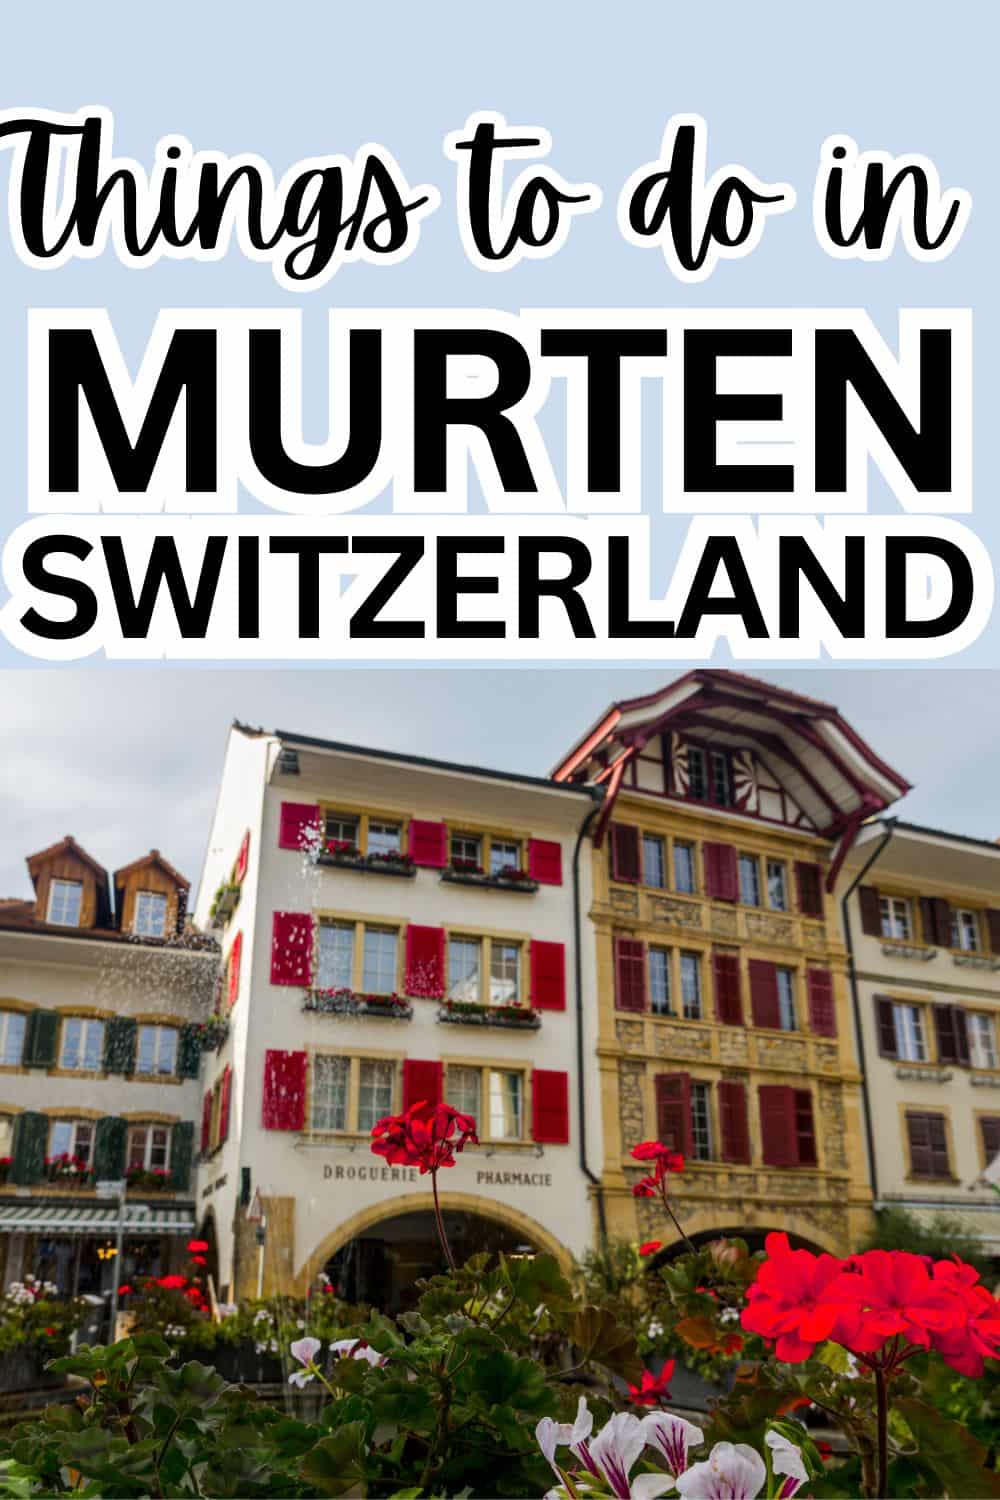 Things to do in Murten, Switzerland